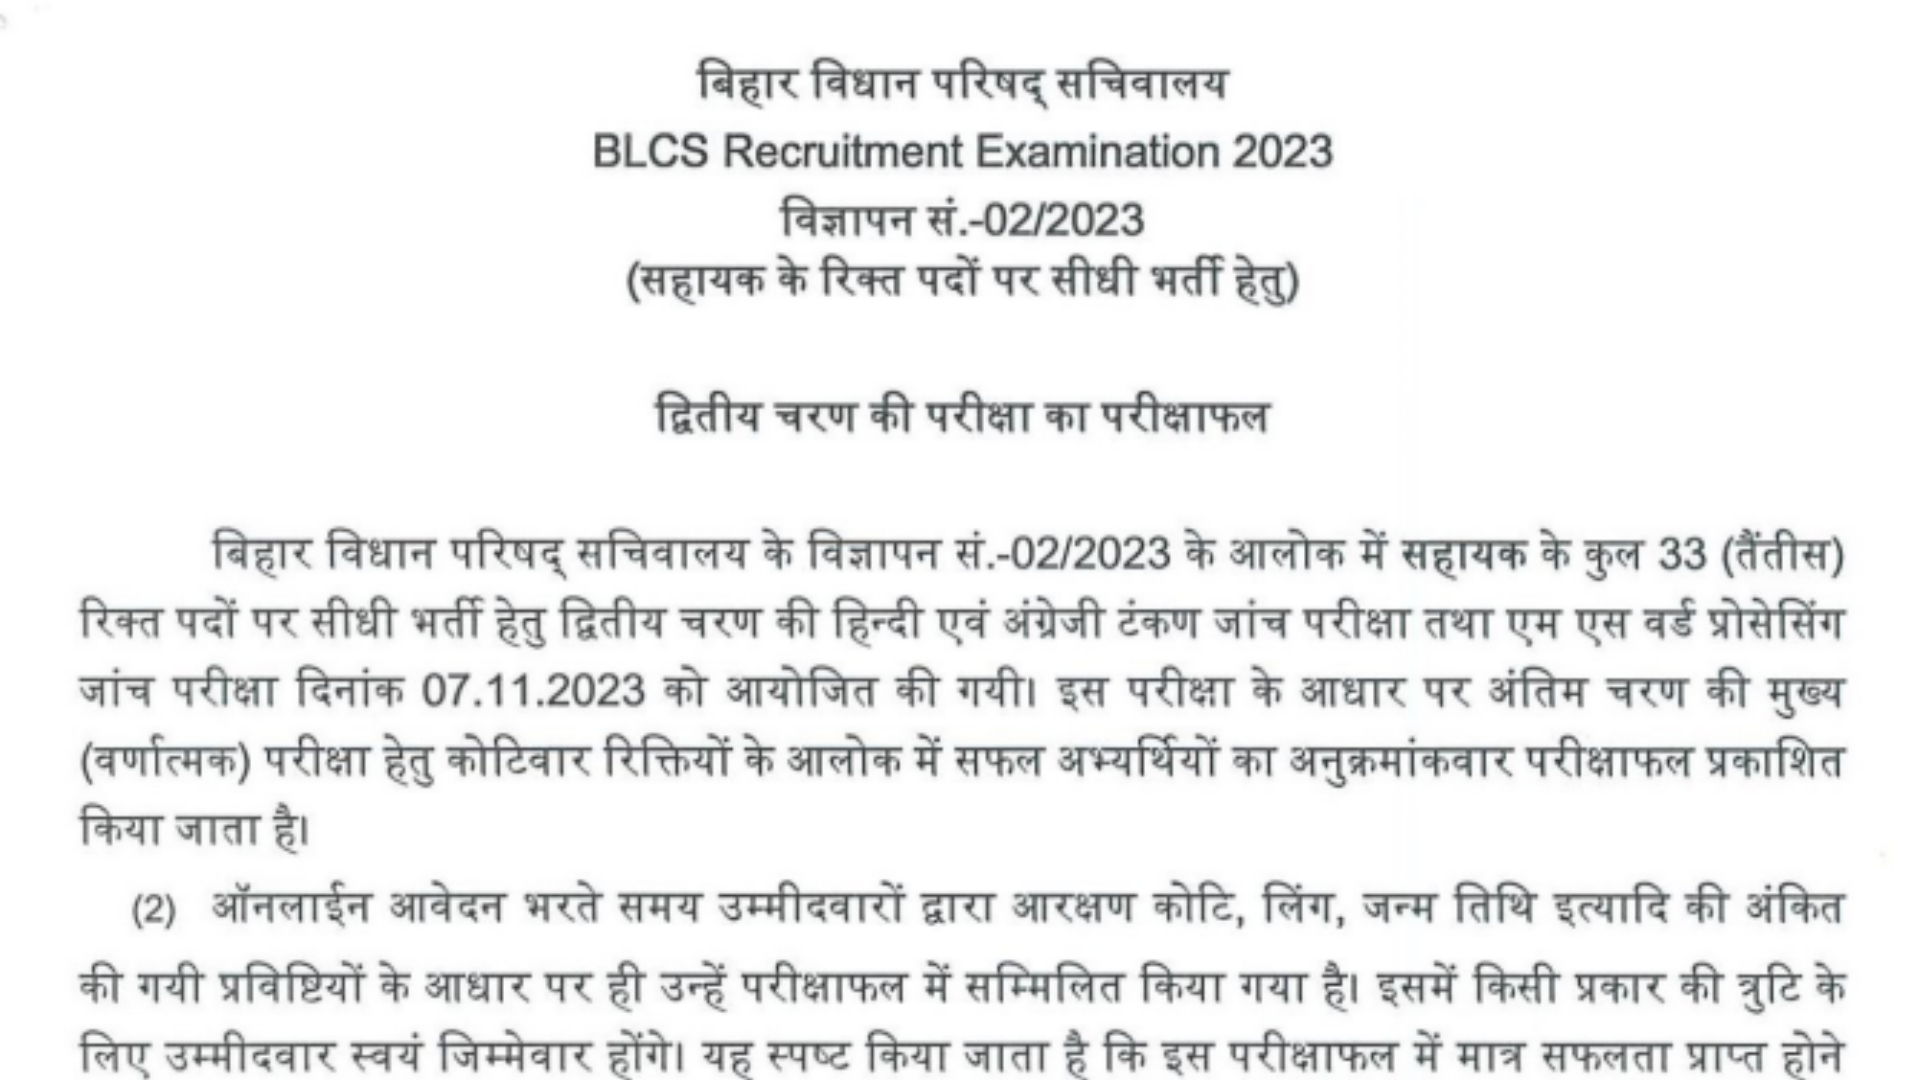 Bihar Bihar Legislative Council Vidhan Parishad Recruitment 2023 Assistant, DEO, LDC Exam Final Result for Various 172 Post